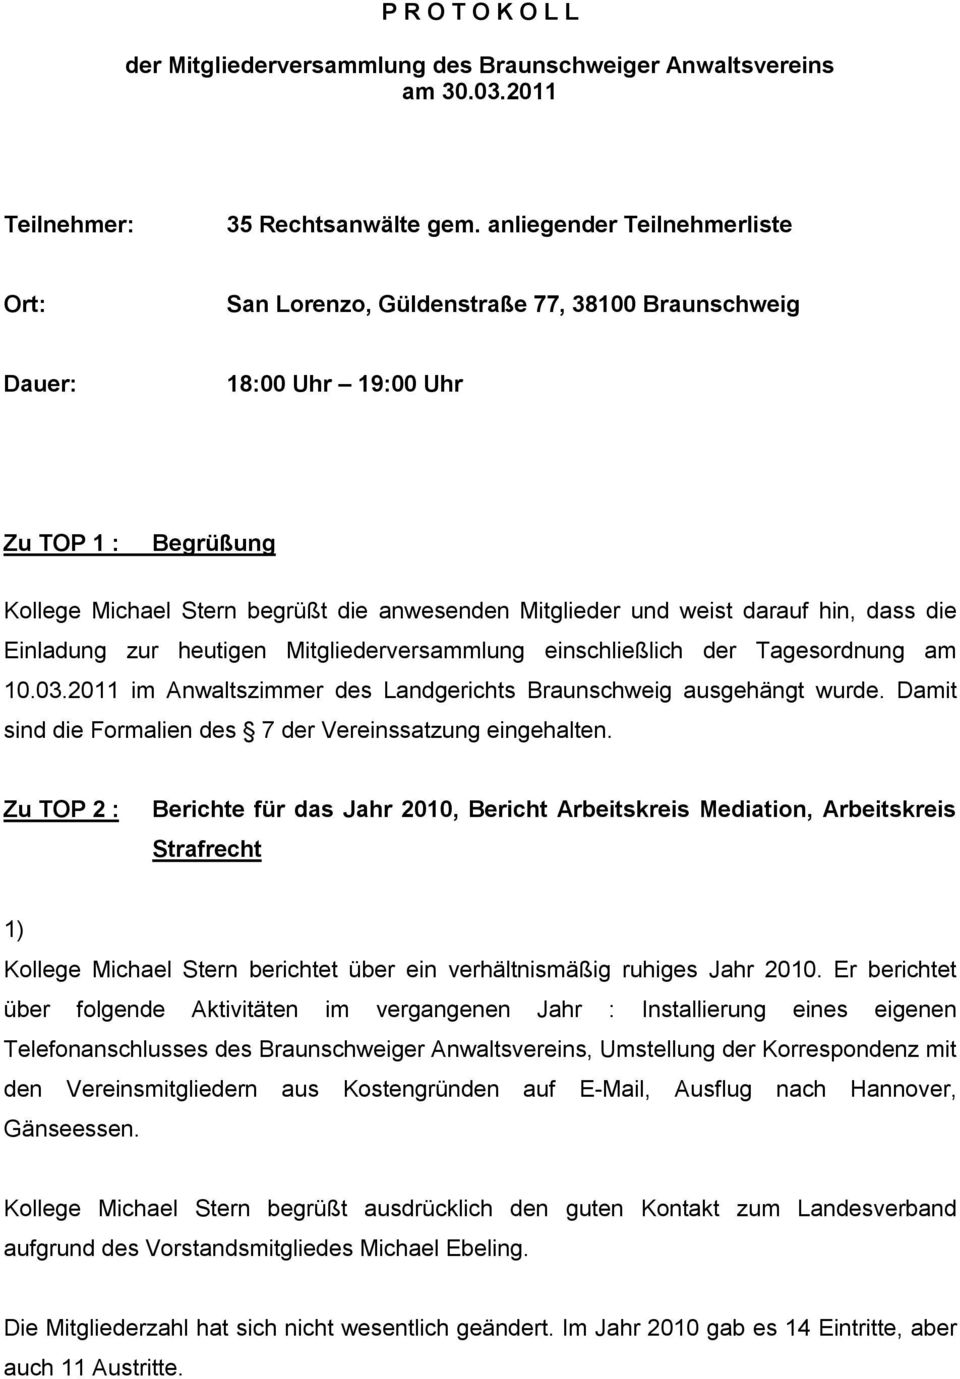 darauf hin, dass die Einladung zur heutigen Mitgliederversammlung einschließlich der Tagesordnung am 10.03.2011 im Anwaltszimmer des Landgerichts Braunschweig ausgehängt wurde.